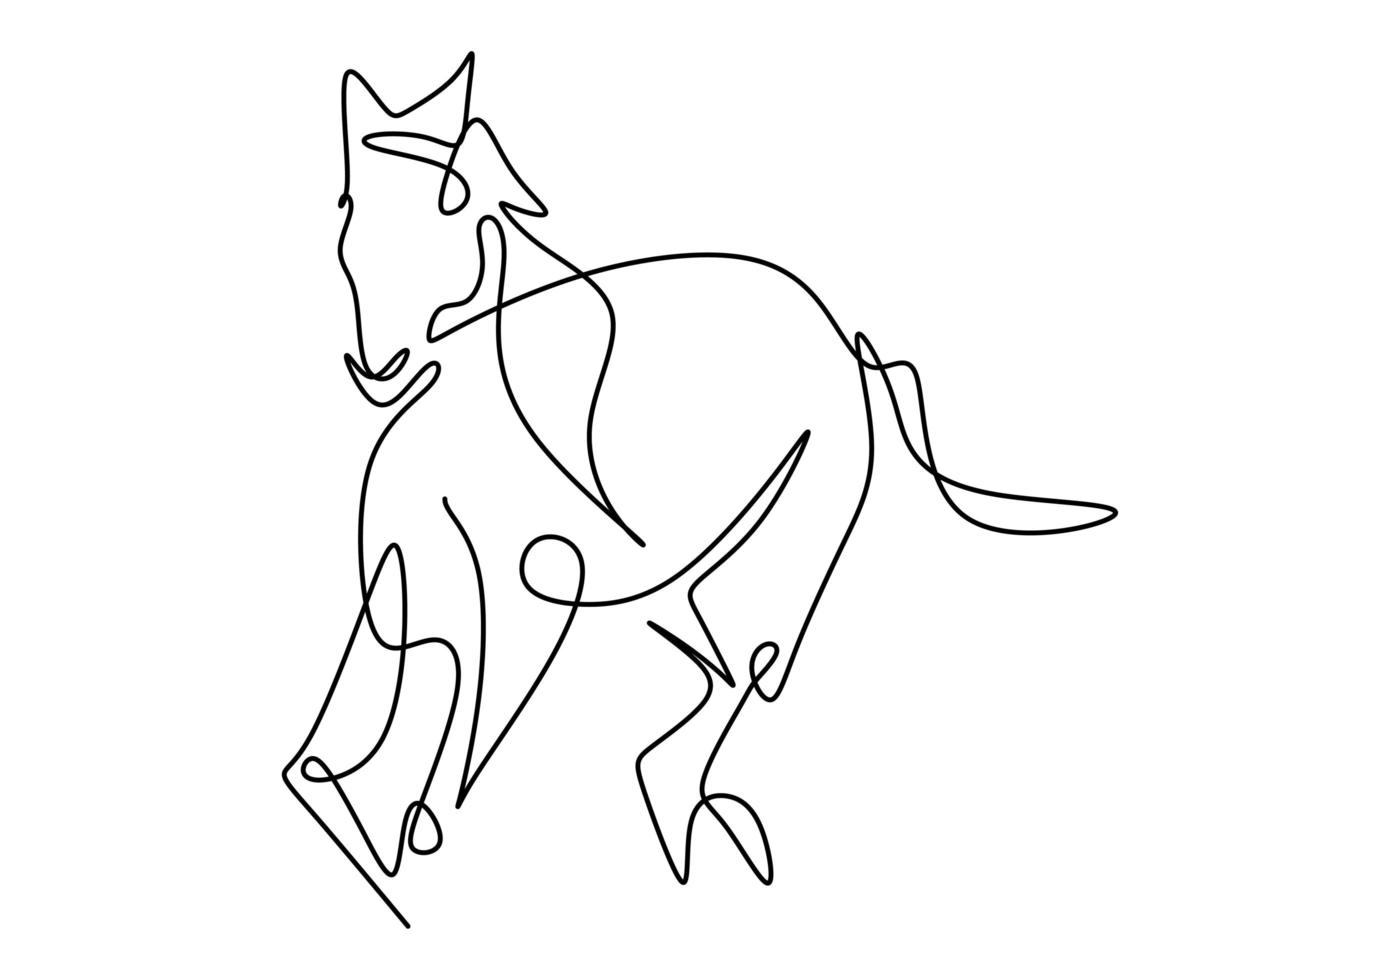 dibujo de una sola línea de la identidad del logotipo de la empresa de caballos de elegancia. caballo corriendo. pony caballo mamífero animal símbolo concepto. continuo de una sola línea vector